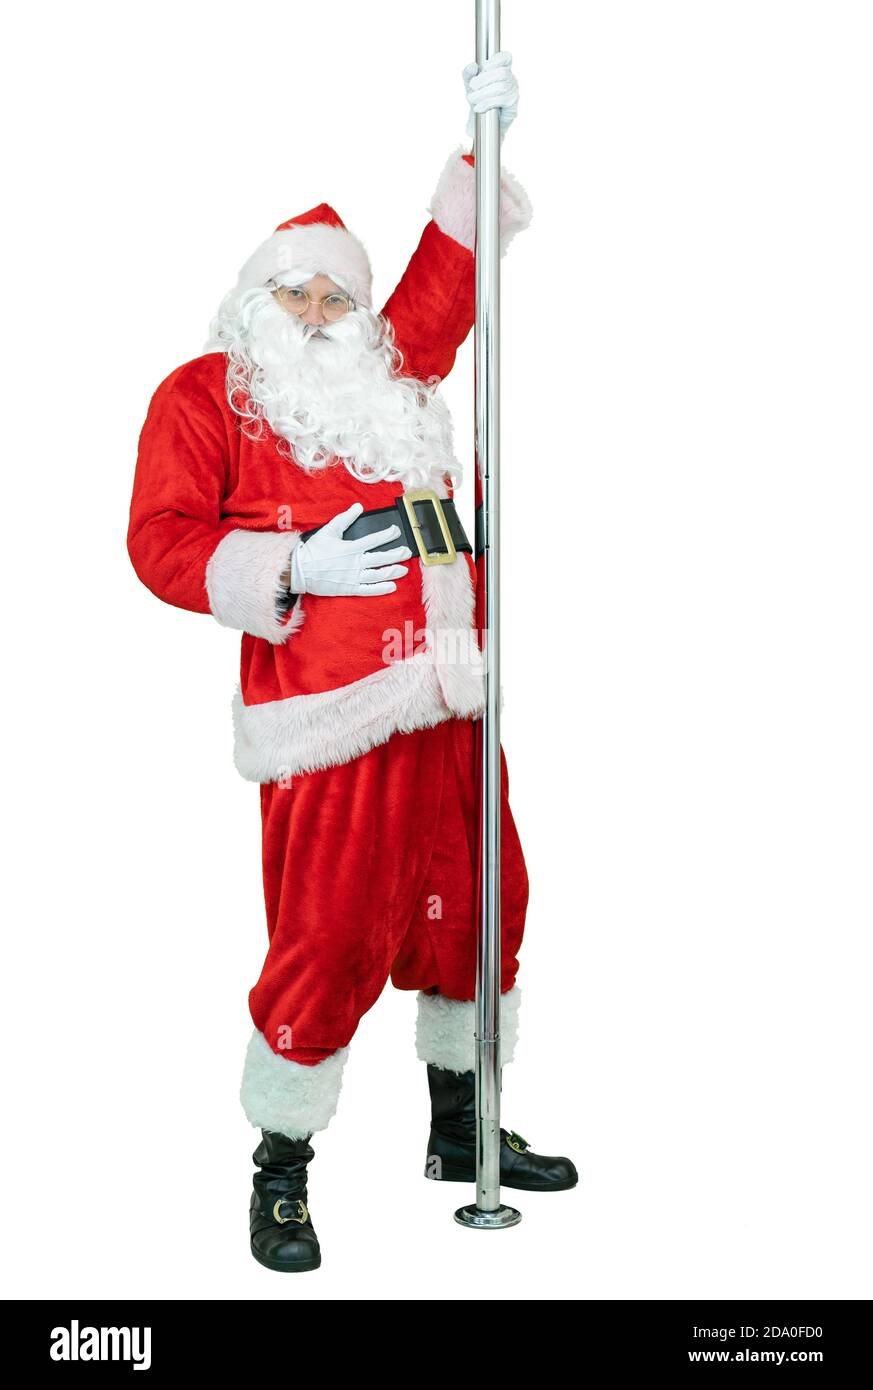 Der Weihnachtsmann ist Pole Dancer und tanzt mit Pylon. Lustige Santa Claus tanzt mit Stange auf weißem Hintergrund. Weihnachten steht bevor Stockfoto